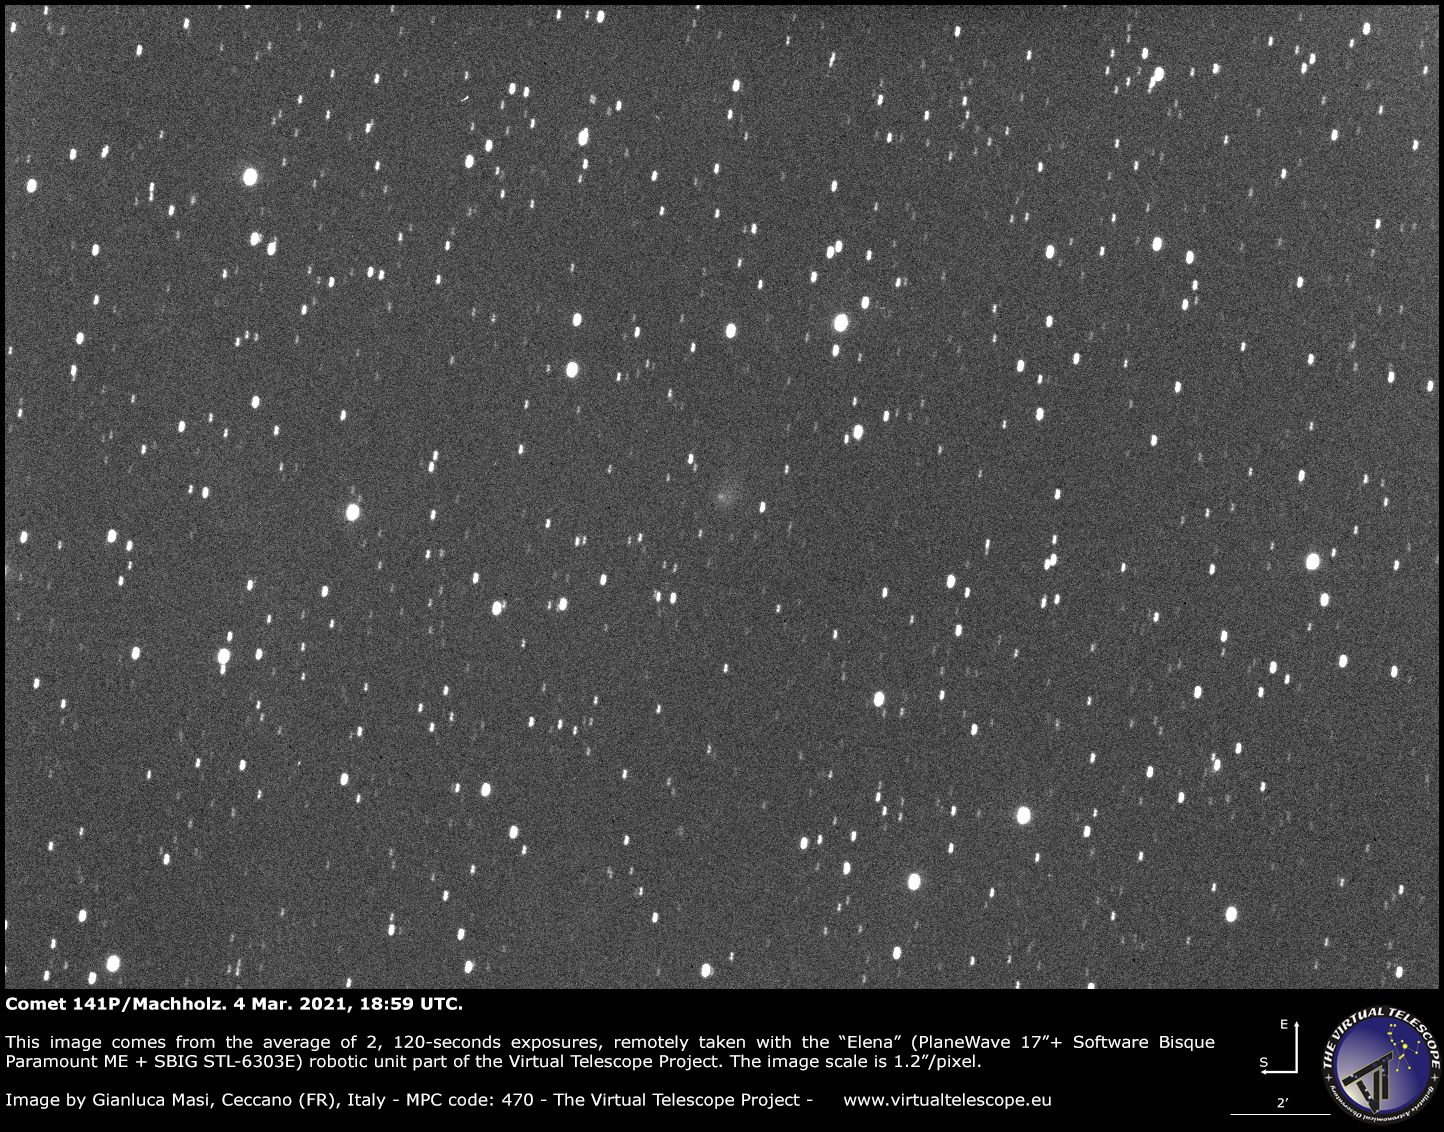 Comet 141P/Machholz: 04 Mar. 2021.